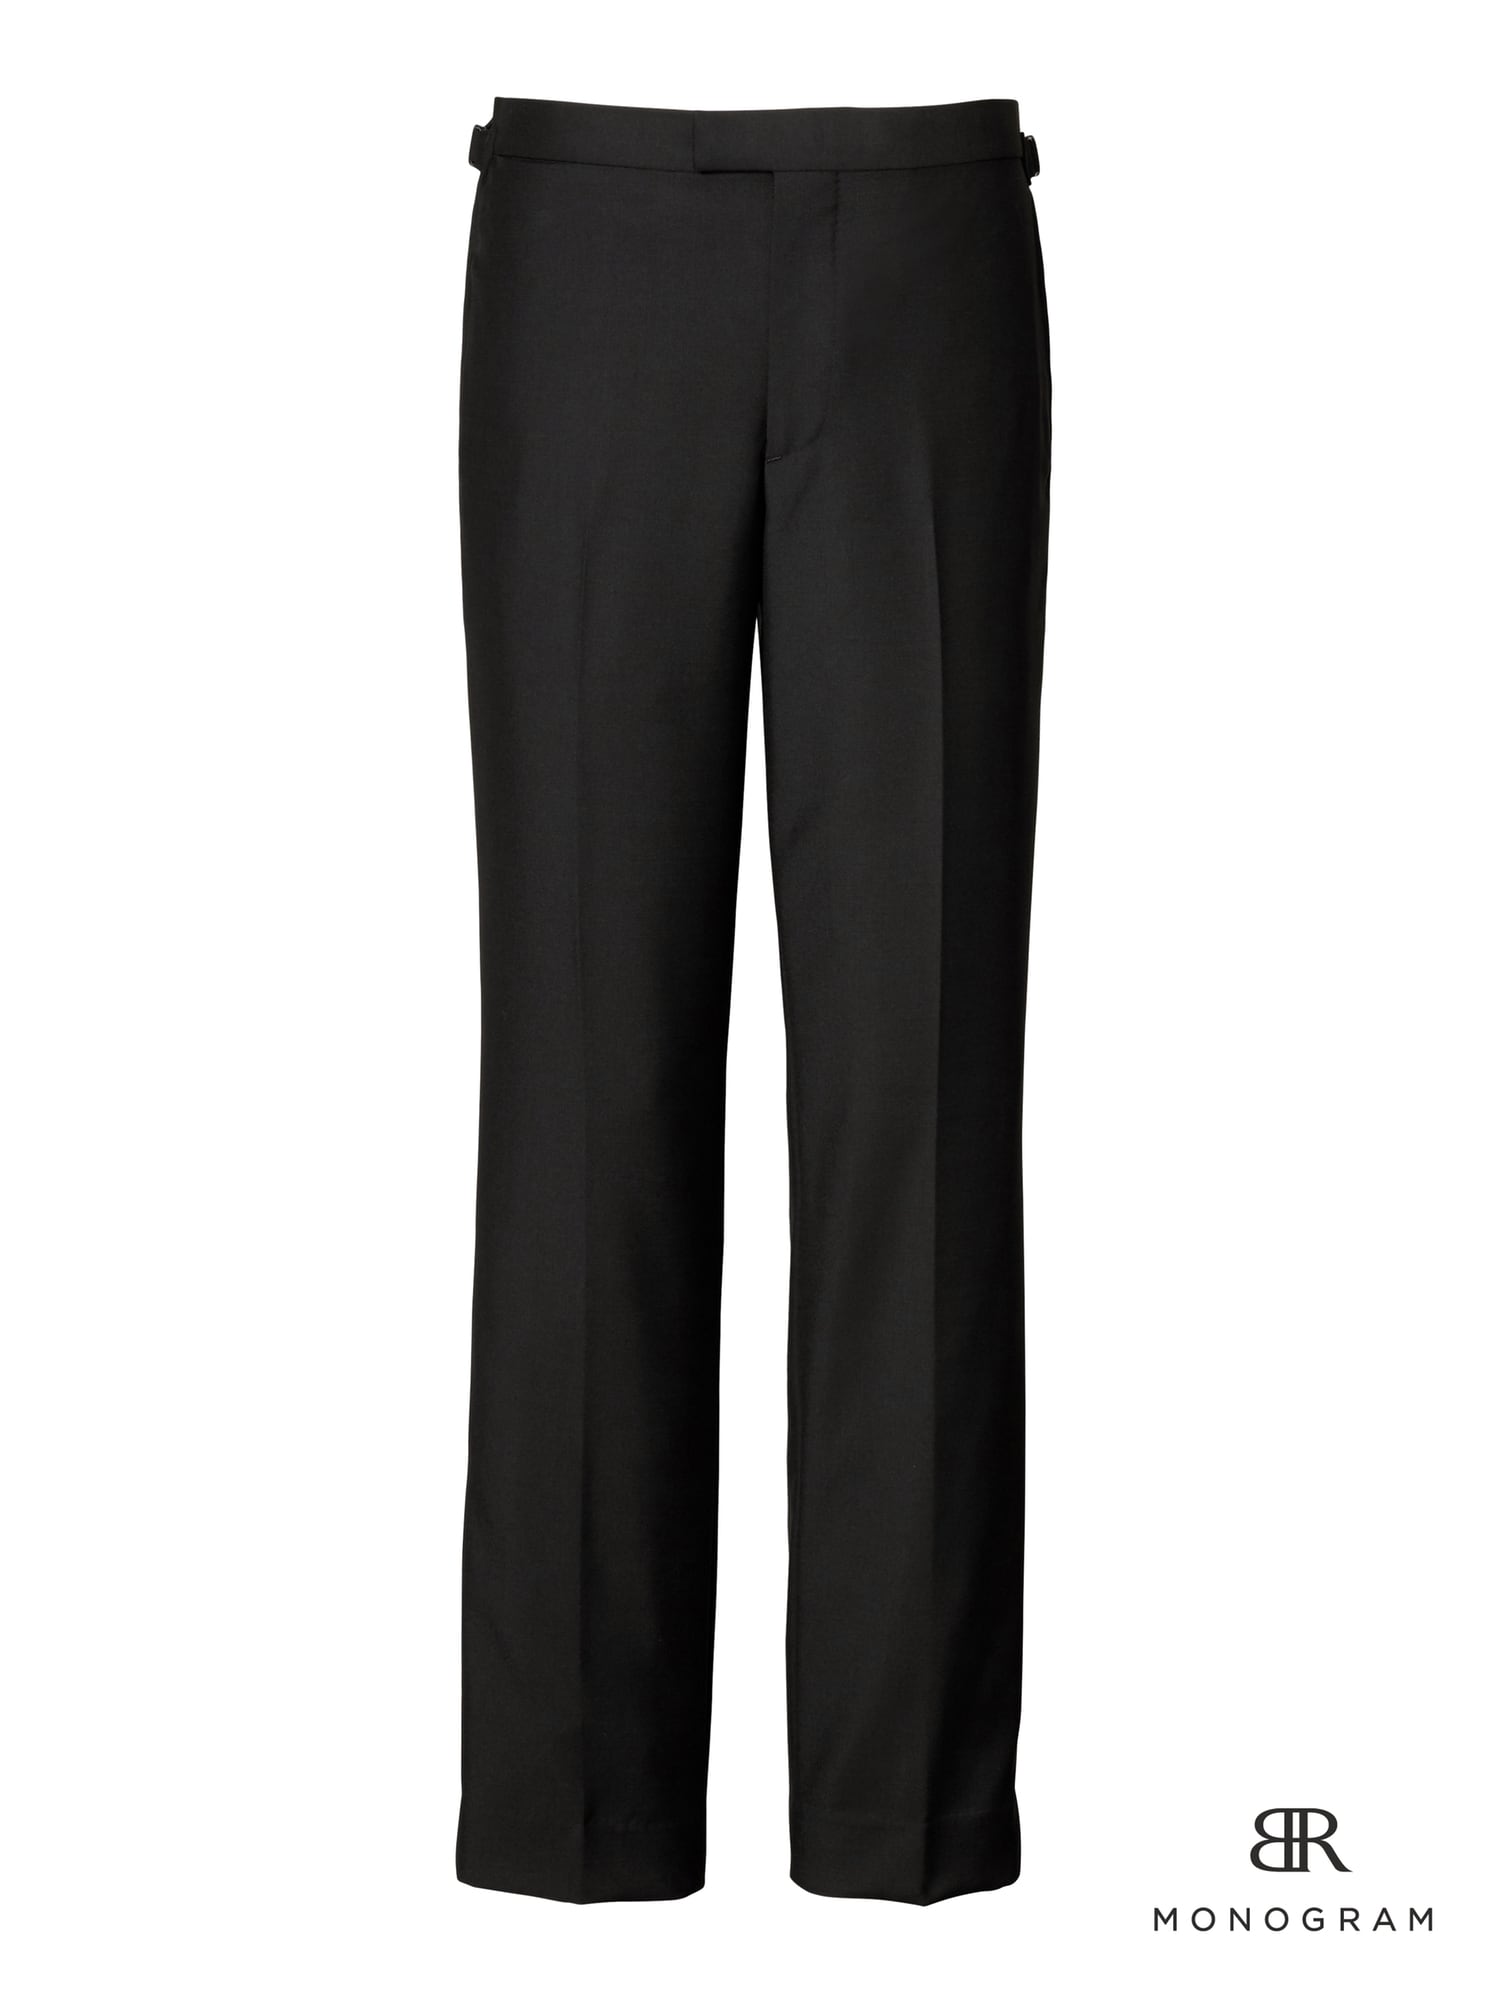 Pantalon de style smoking en mélange de laine et mohair italien noir avec monogramme, coupe étroite